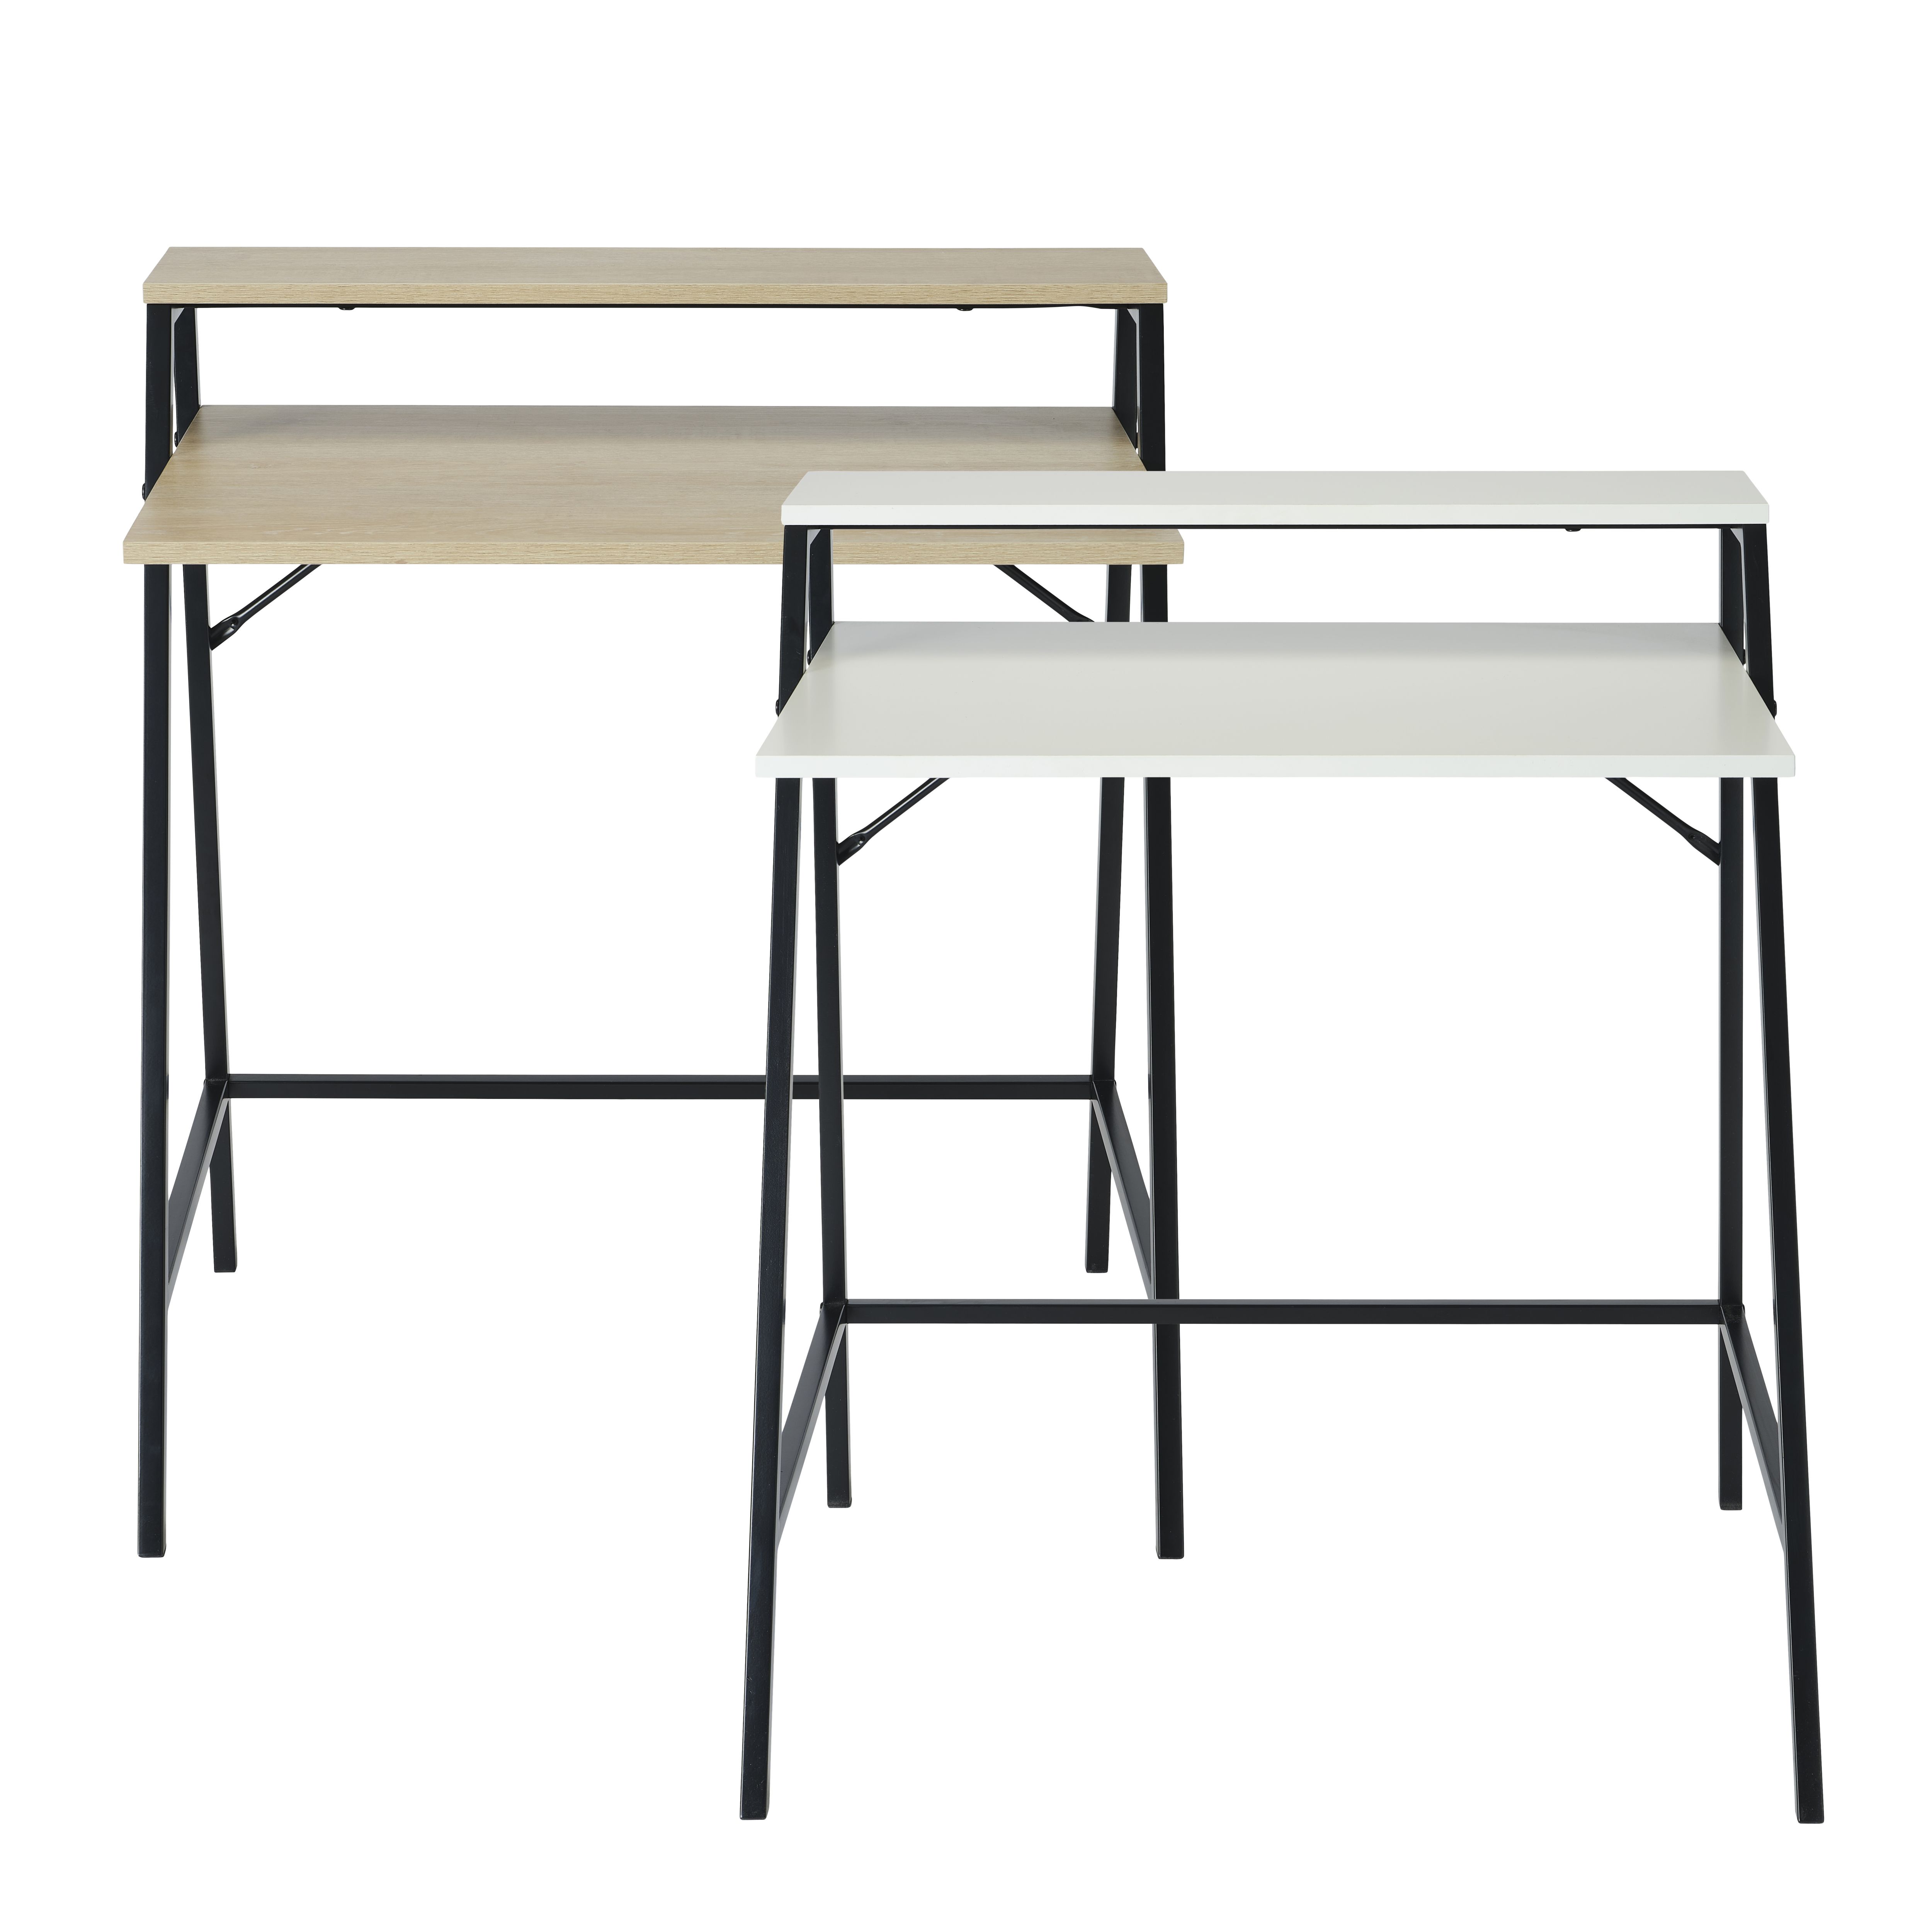 Manera Matt black oak effect Two shelf Desk (H)840mm (W)740mm